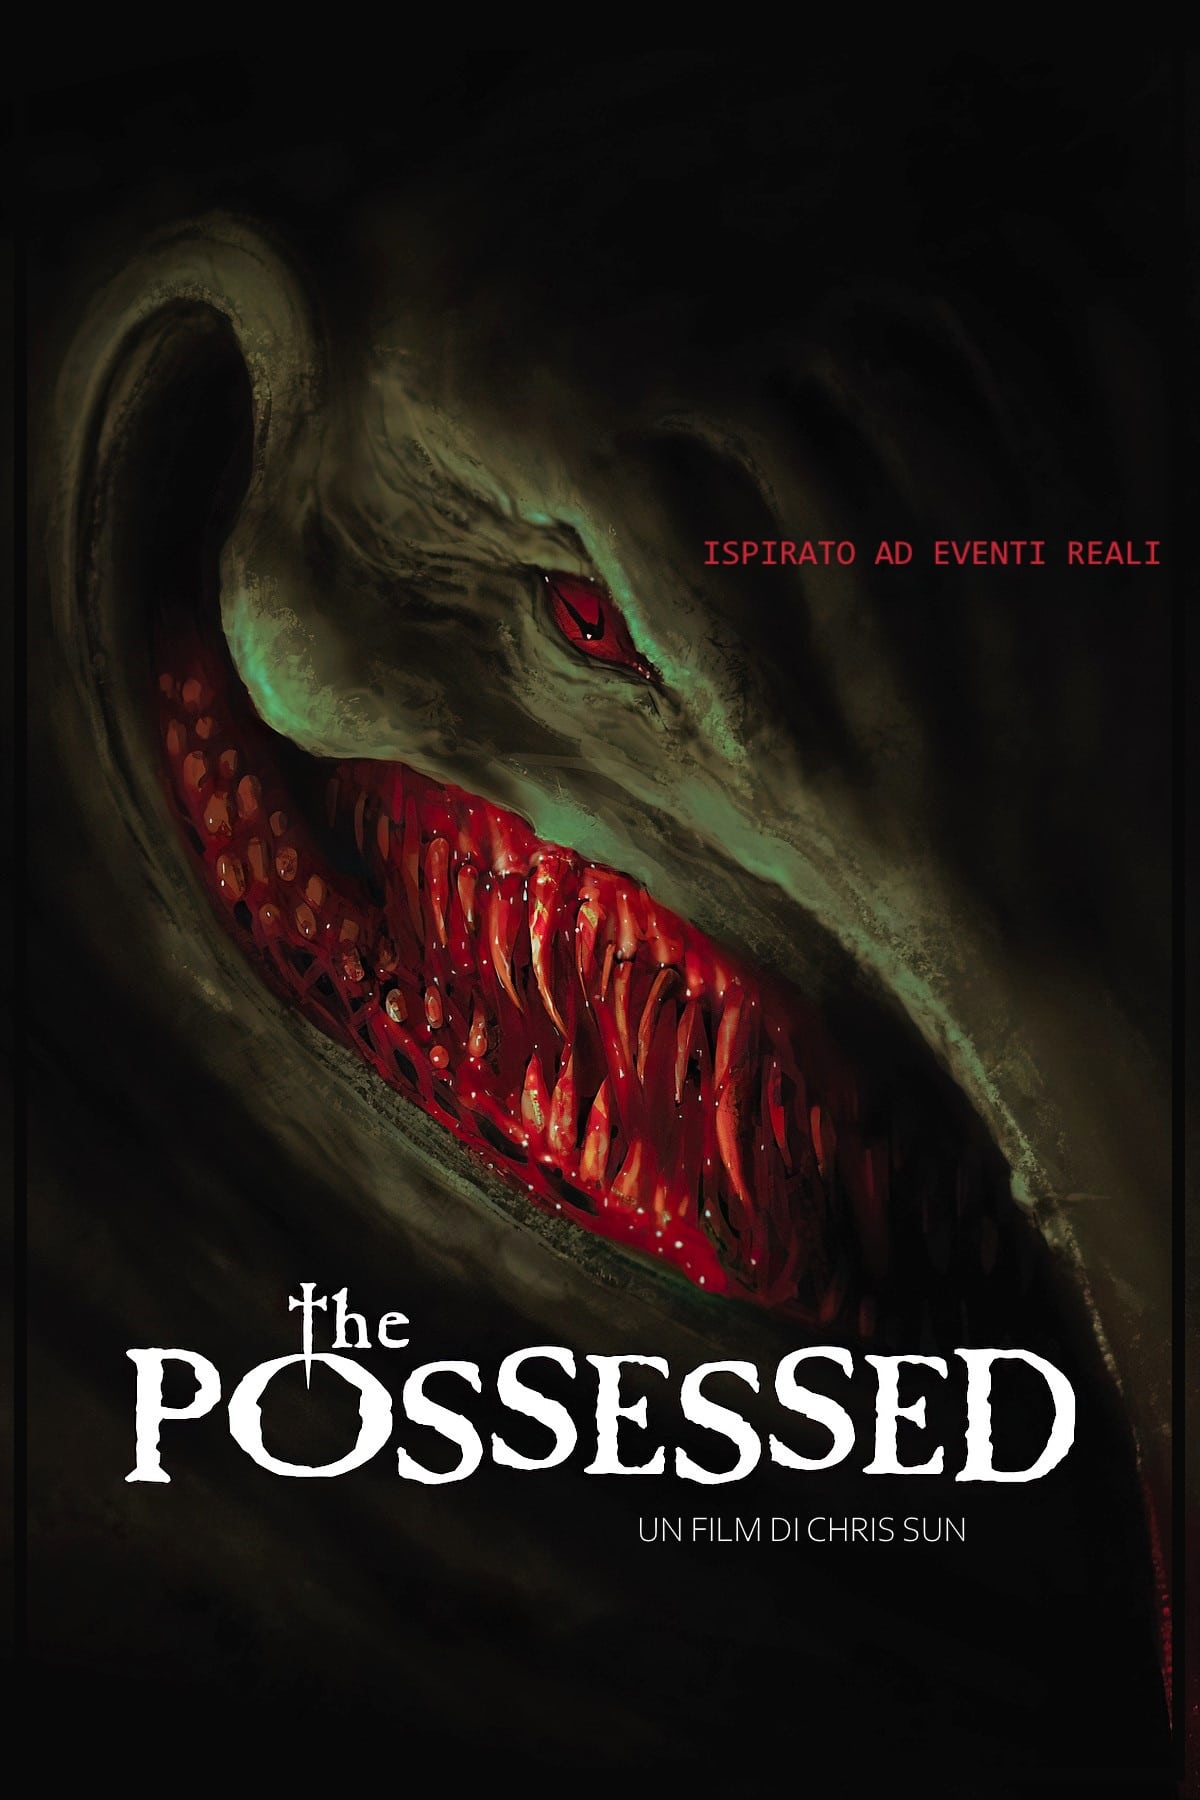 The Possessed film